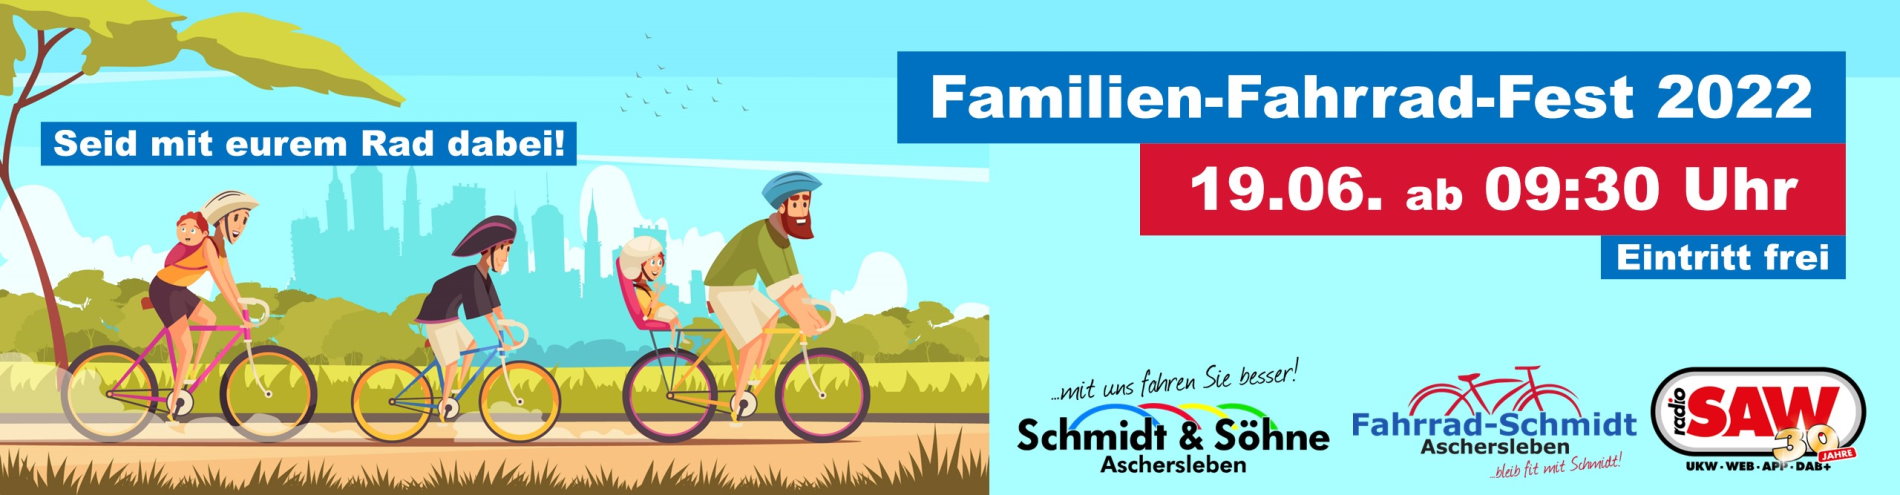 Familien-Fahrrad-Fest 2022